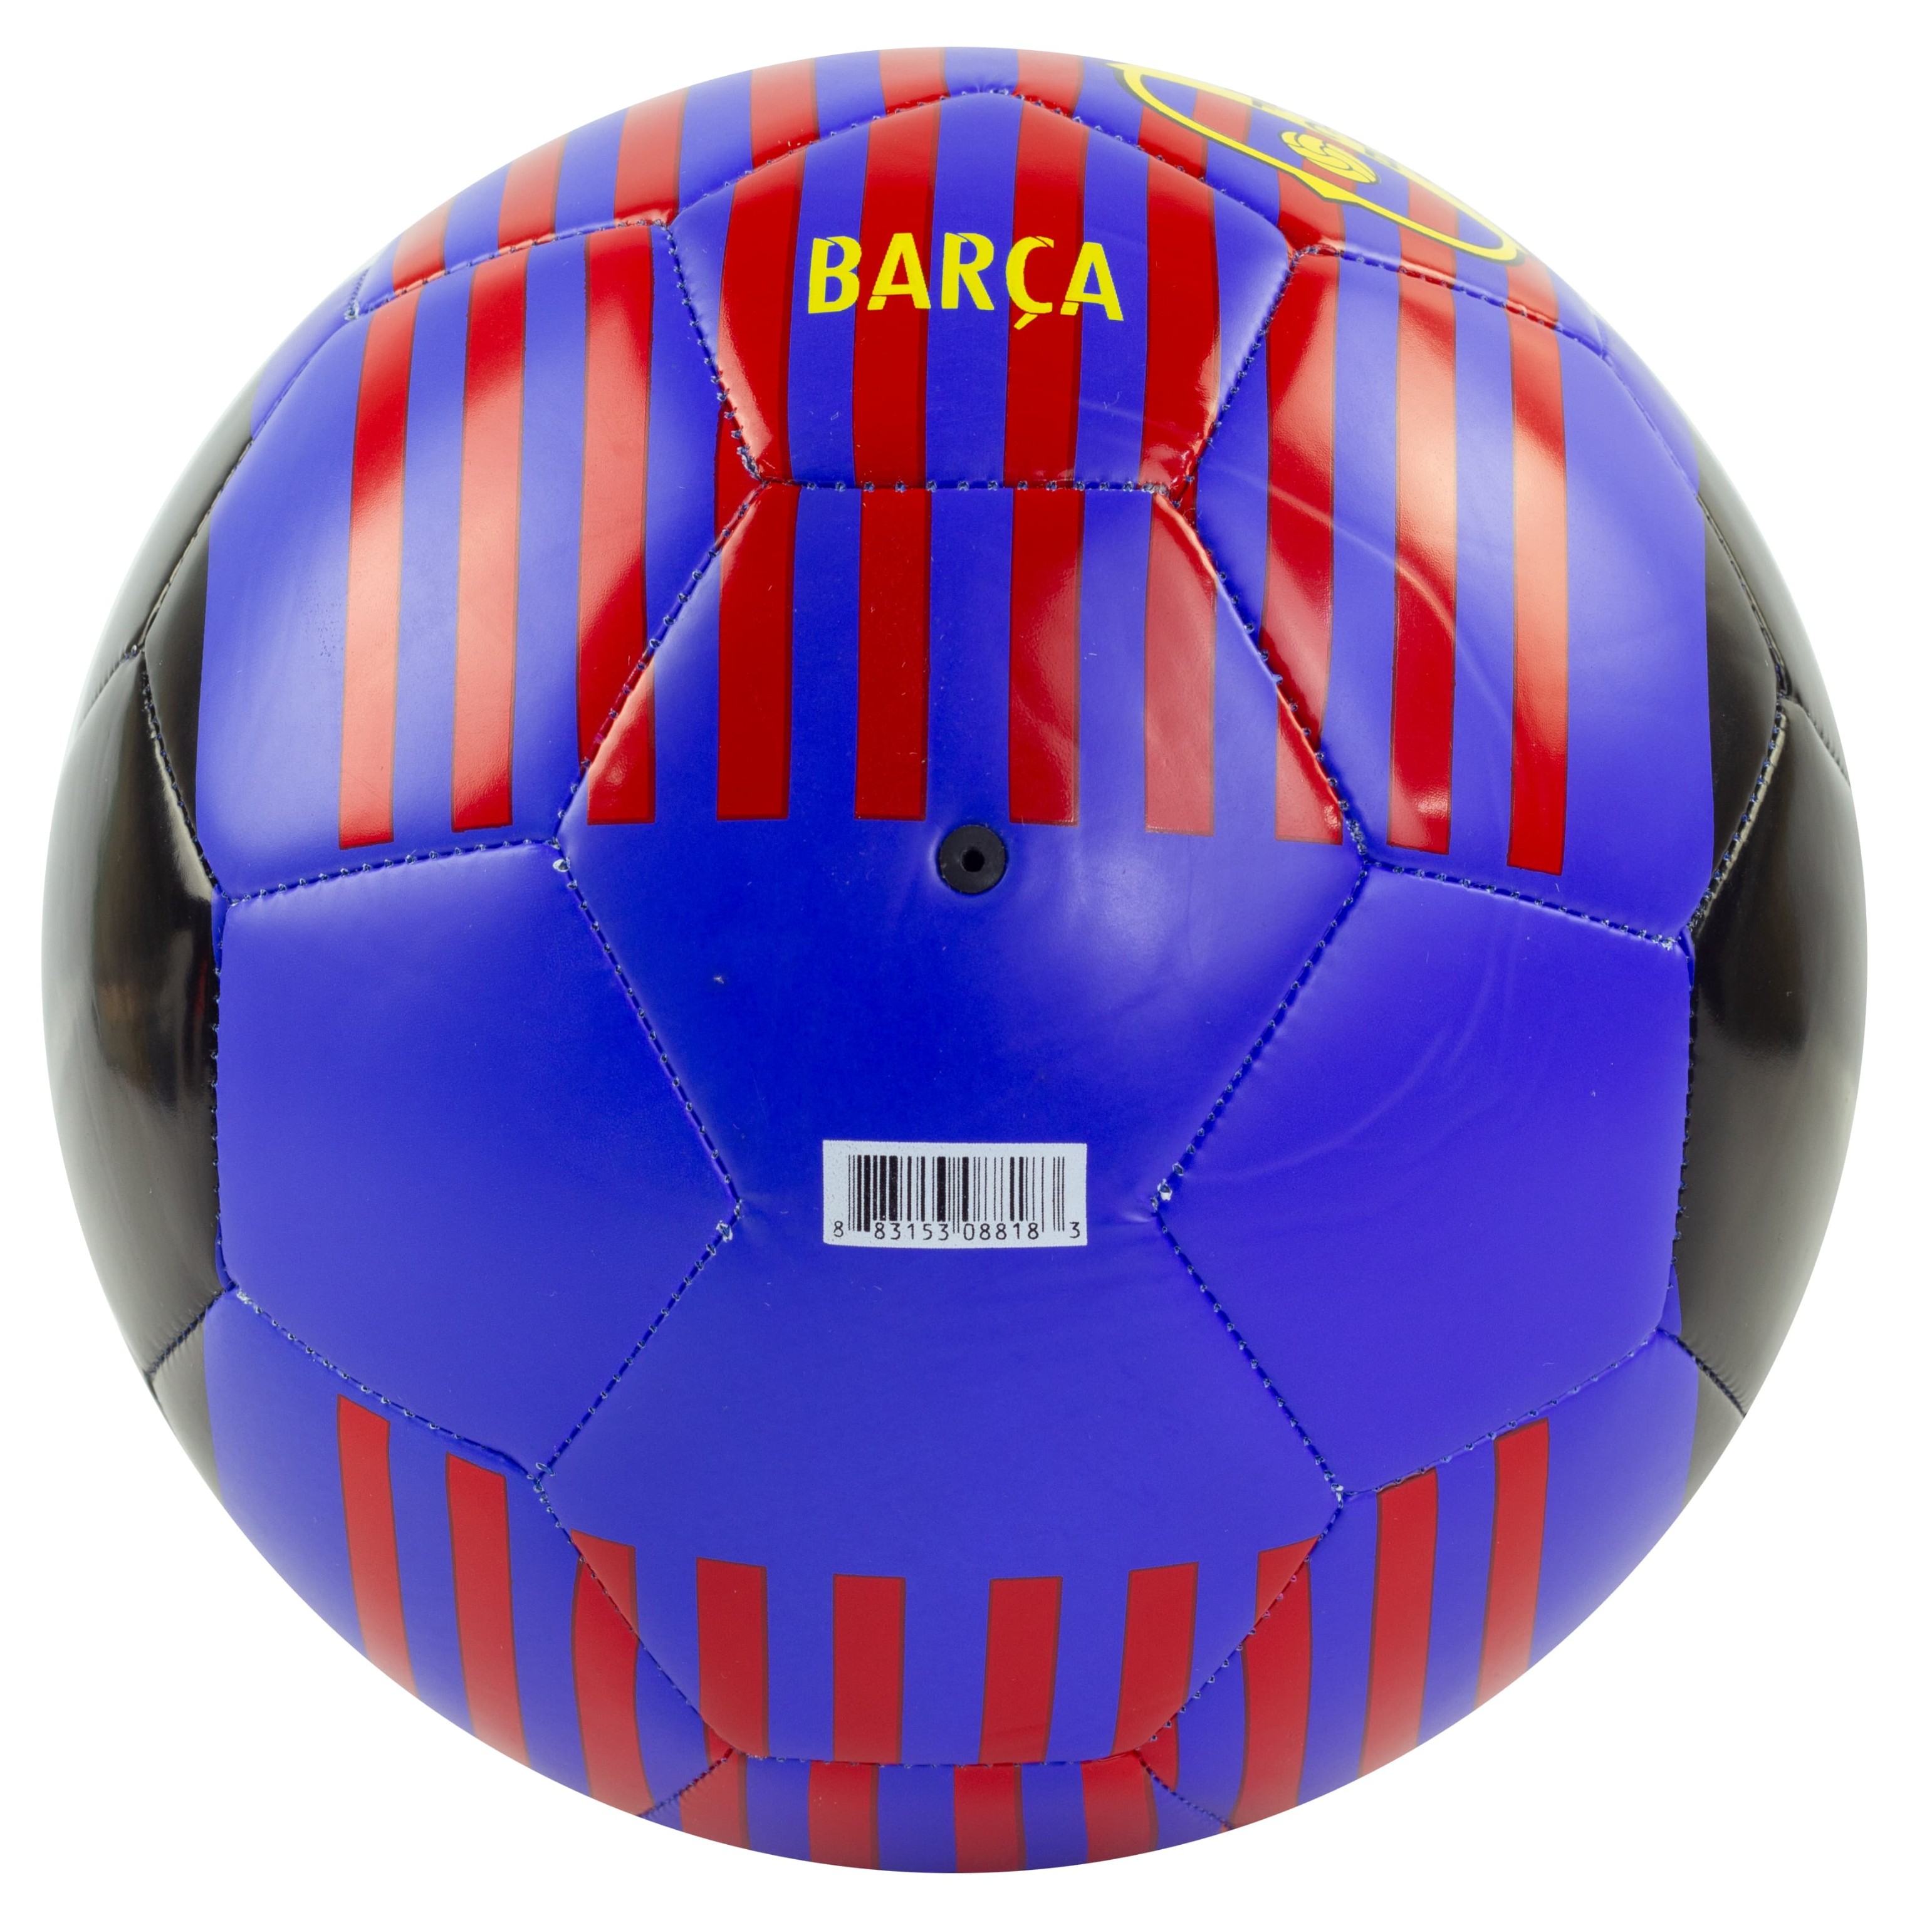 Мяч Футбольный «Barcelona FC Prestige Football» F33972, размер 5, 32 панели